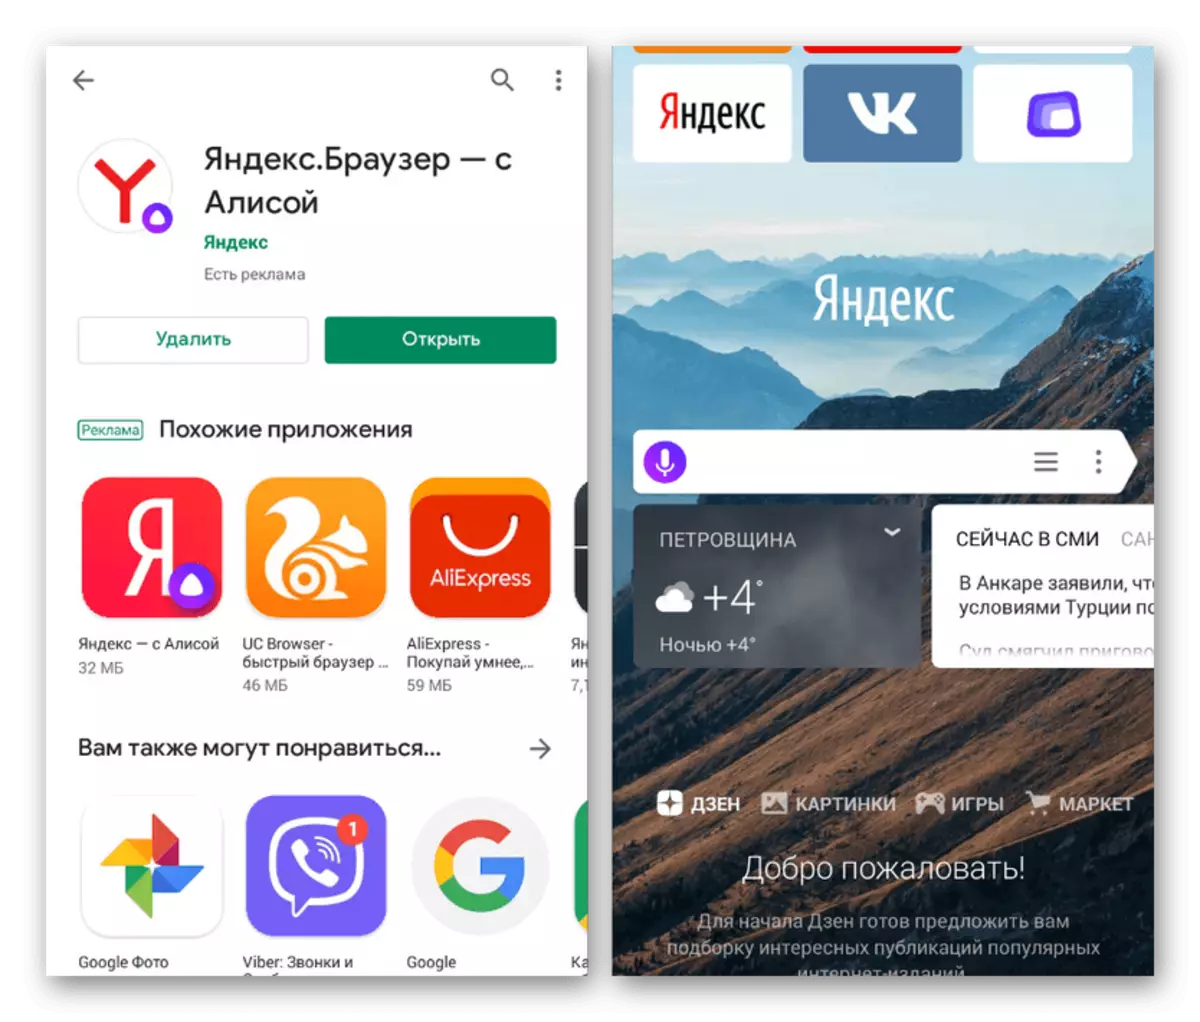 Δείγμα Yandex Αρχική σελίδα στην Yandex.Browser